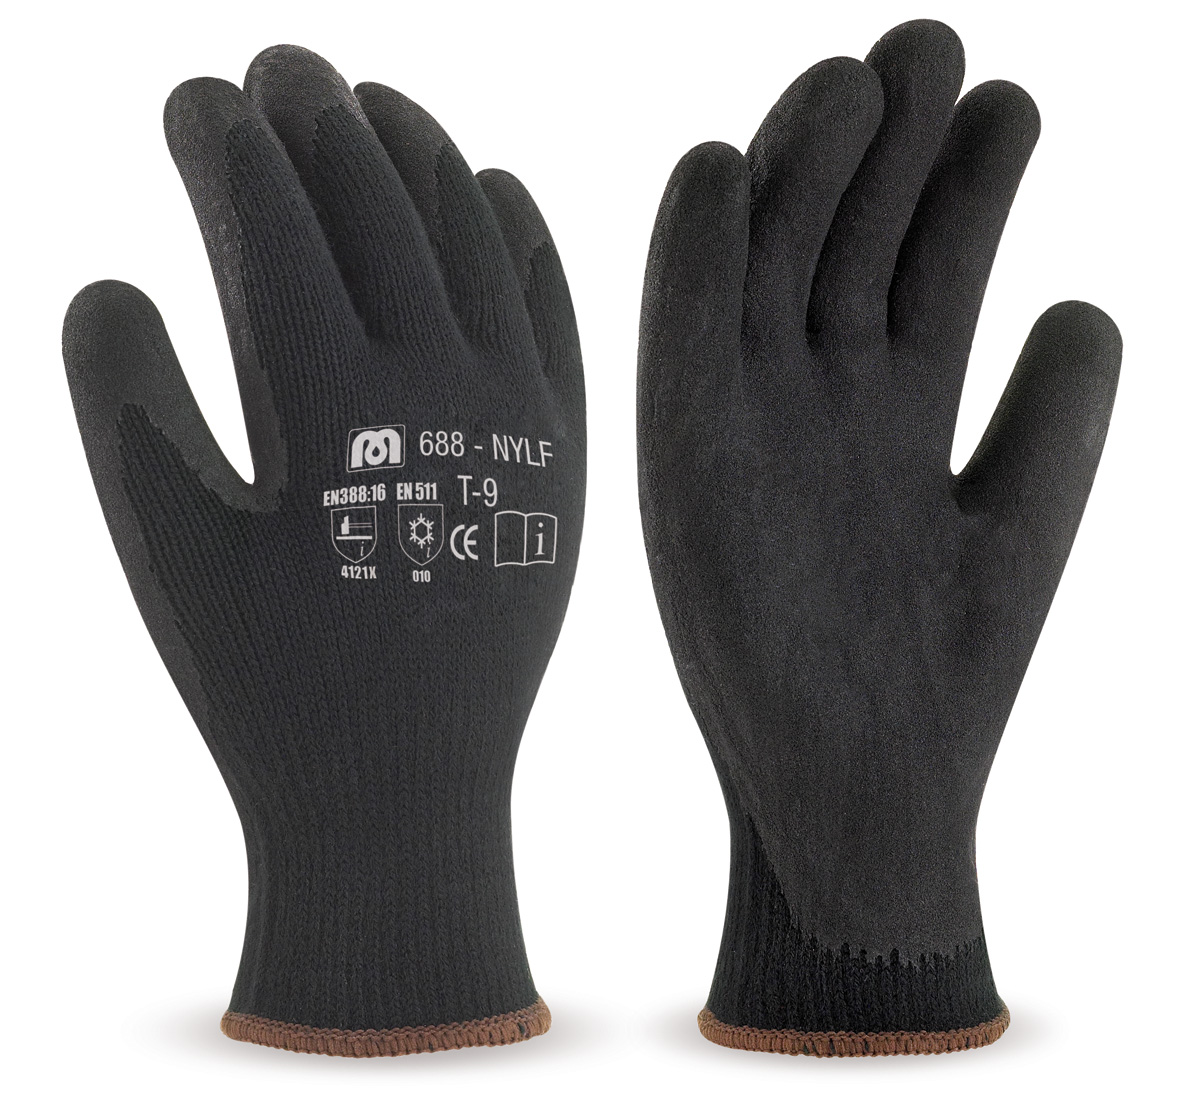 688-NYLF Gants de Travail Anti-froid Gant nylon noir avec revêtement latex de couleur noire